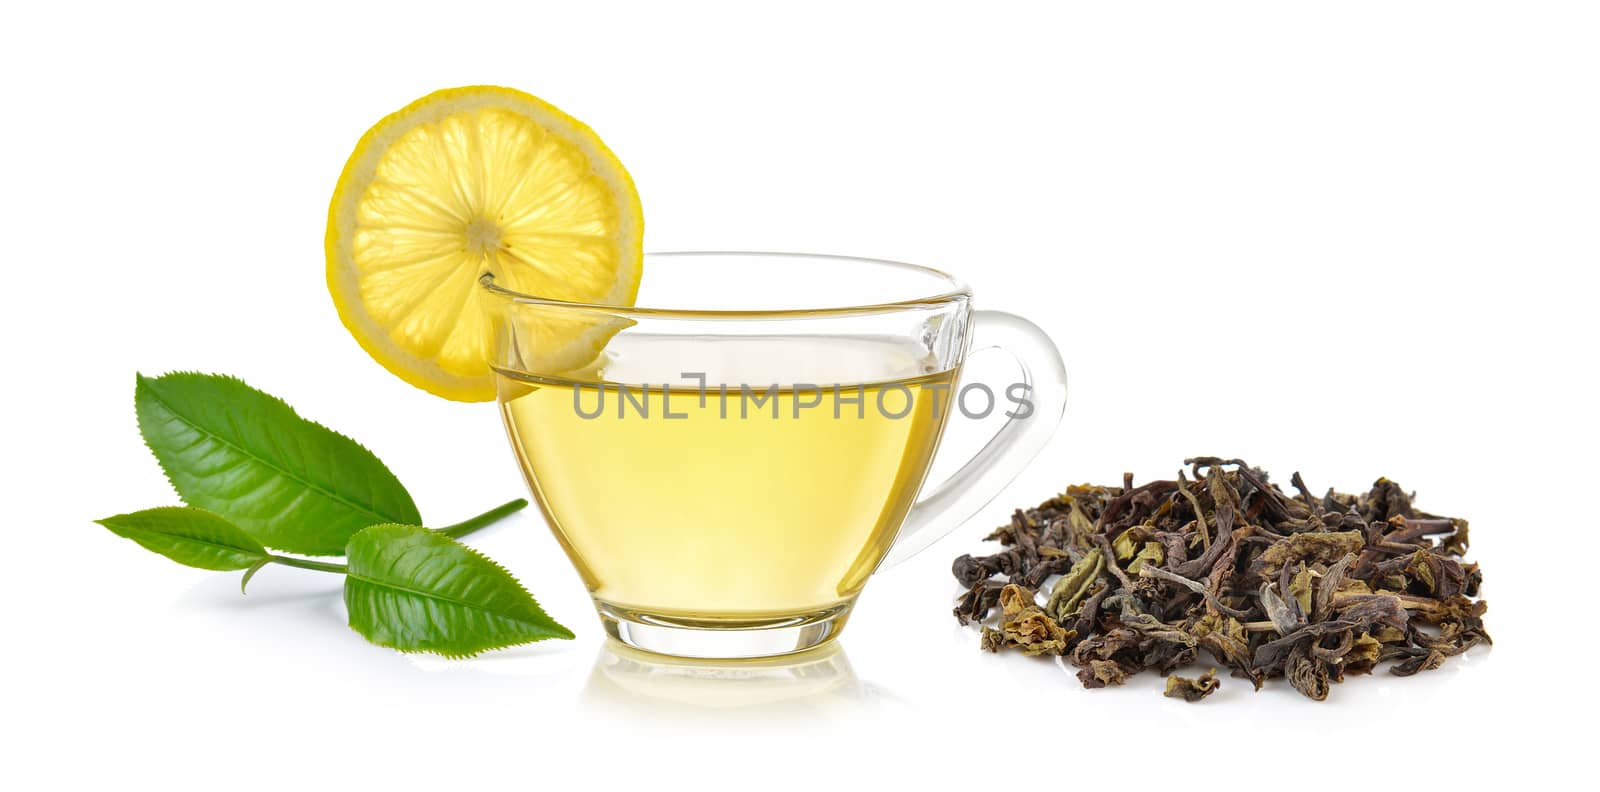 glass of lemon tea on white background by sommai